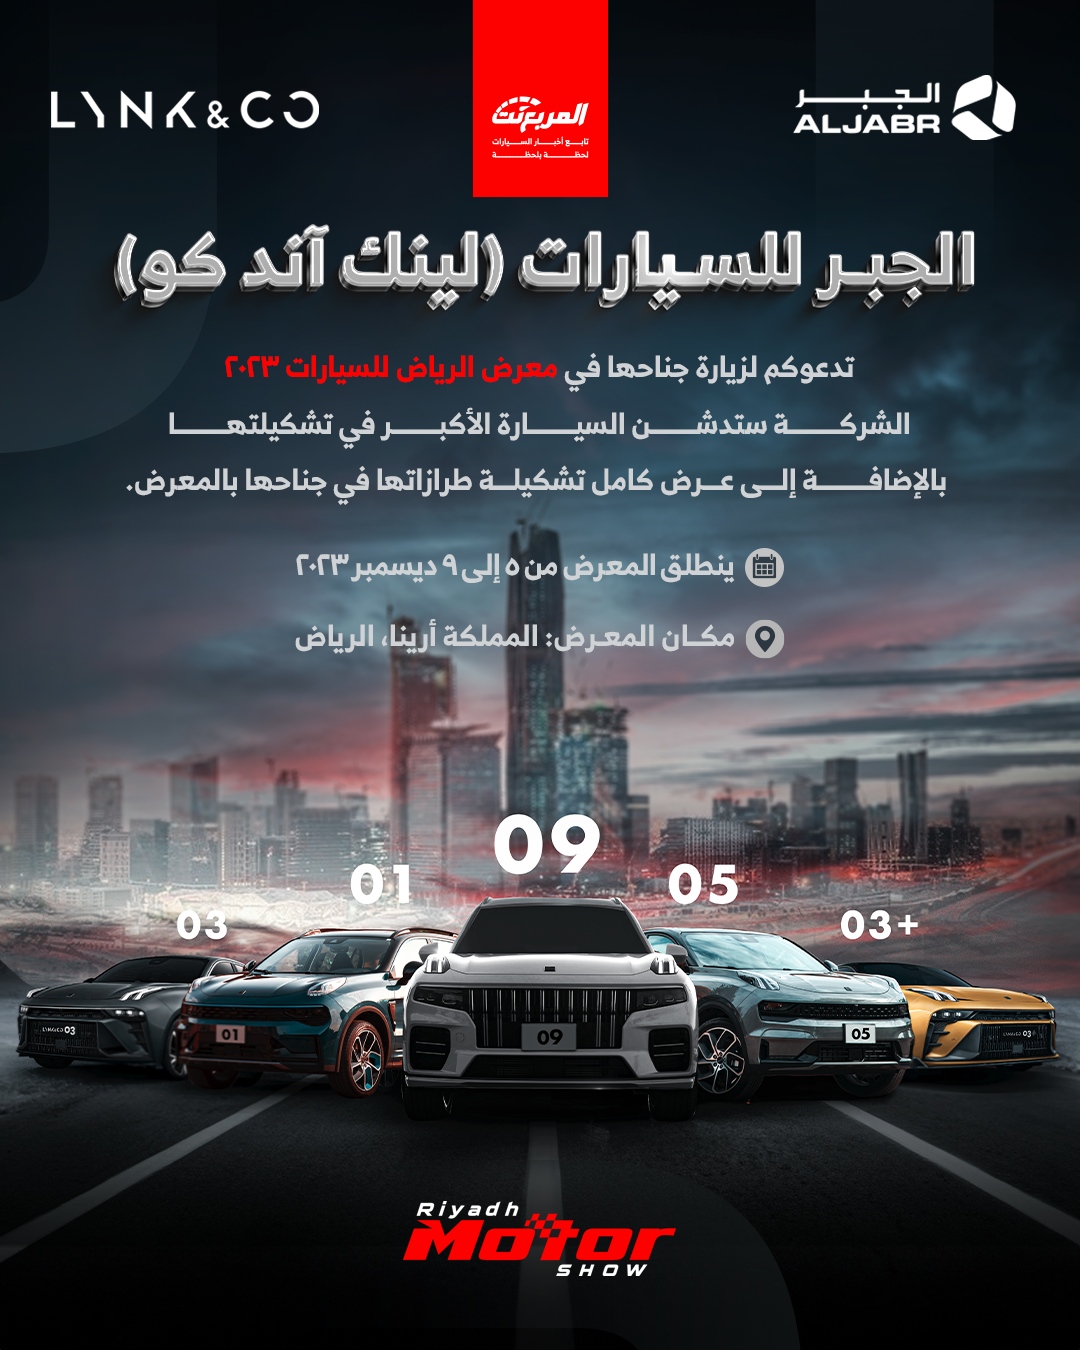 لينك اند كو (الجبر للسيارات) تستعد للمشاركة في معرض الرياض للسيارات 2023 لإطلاق أكبر سيارة لديها واستعراض التشكيلة المميزة 7